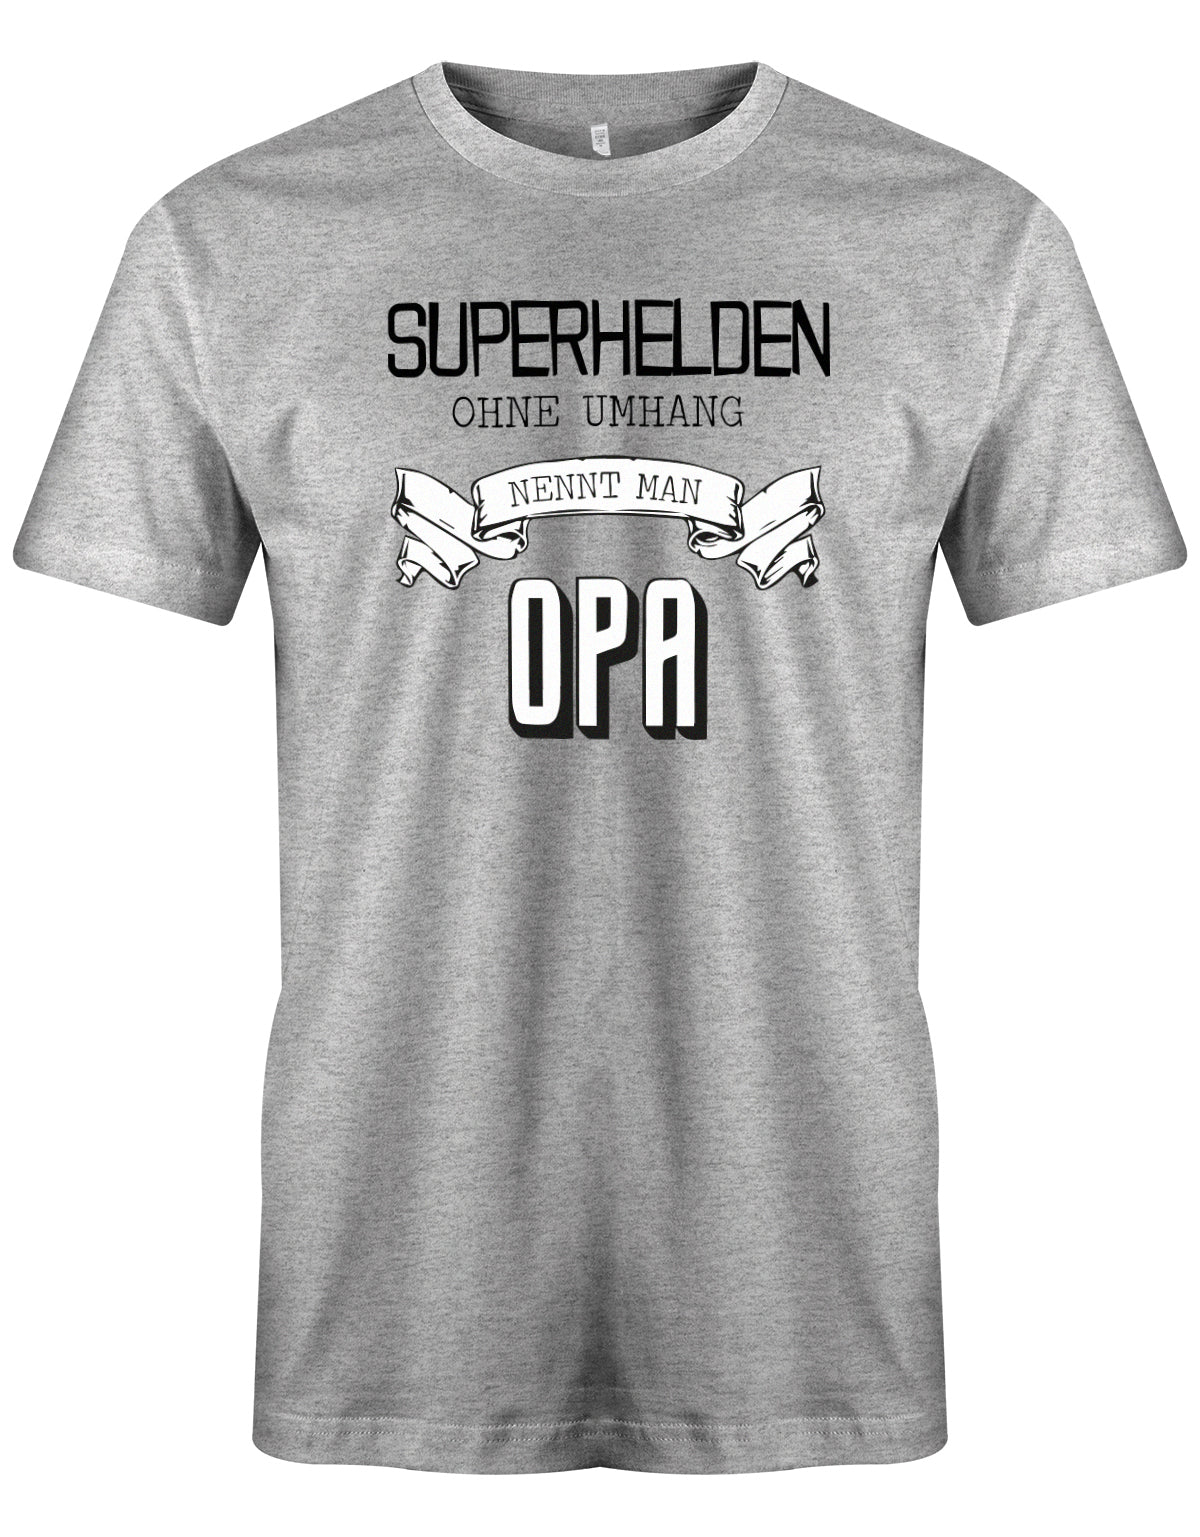 Opa T-Shirt – Superhelden ohne Umhang nennt man Opa Grau